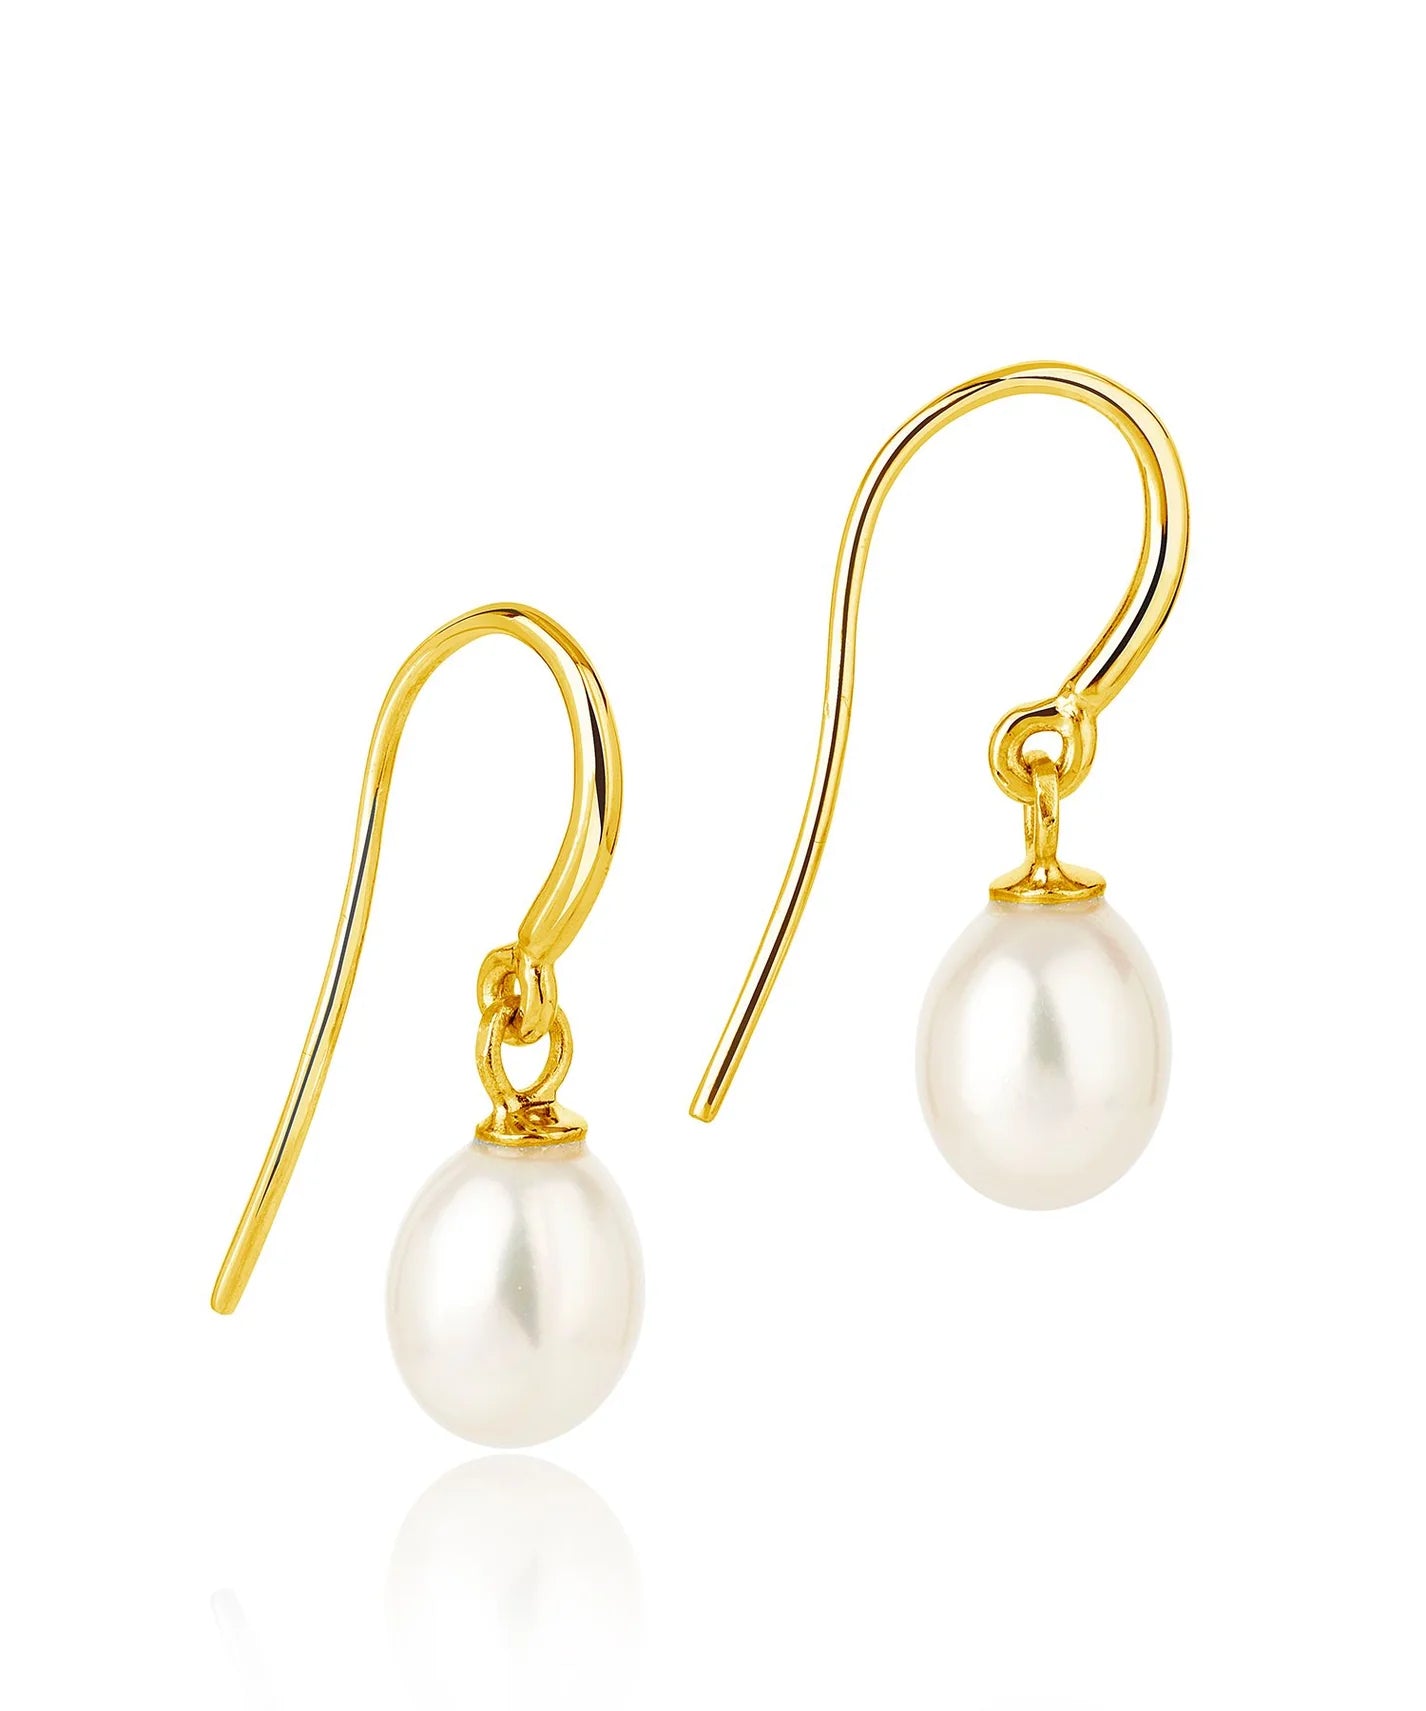 Gold single drop freshwater pearl earrings